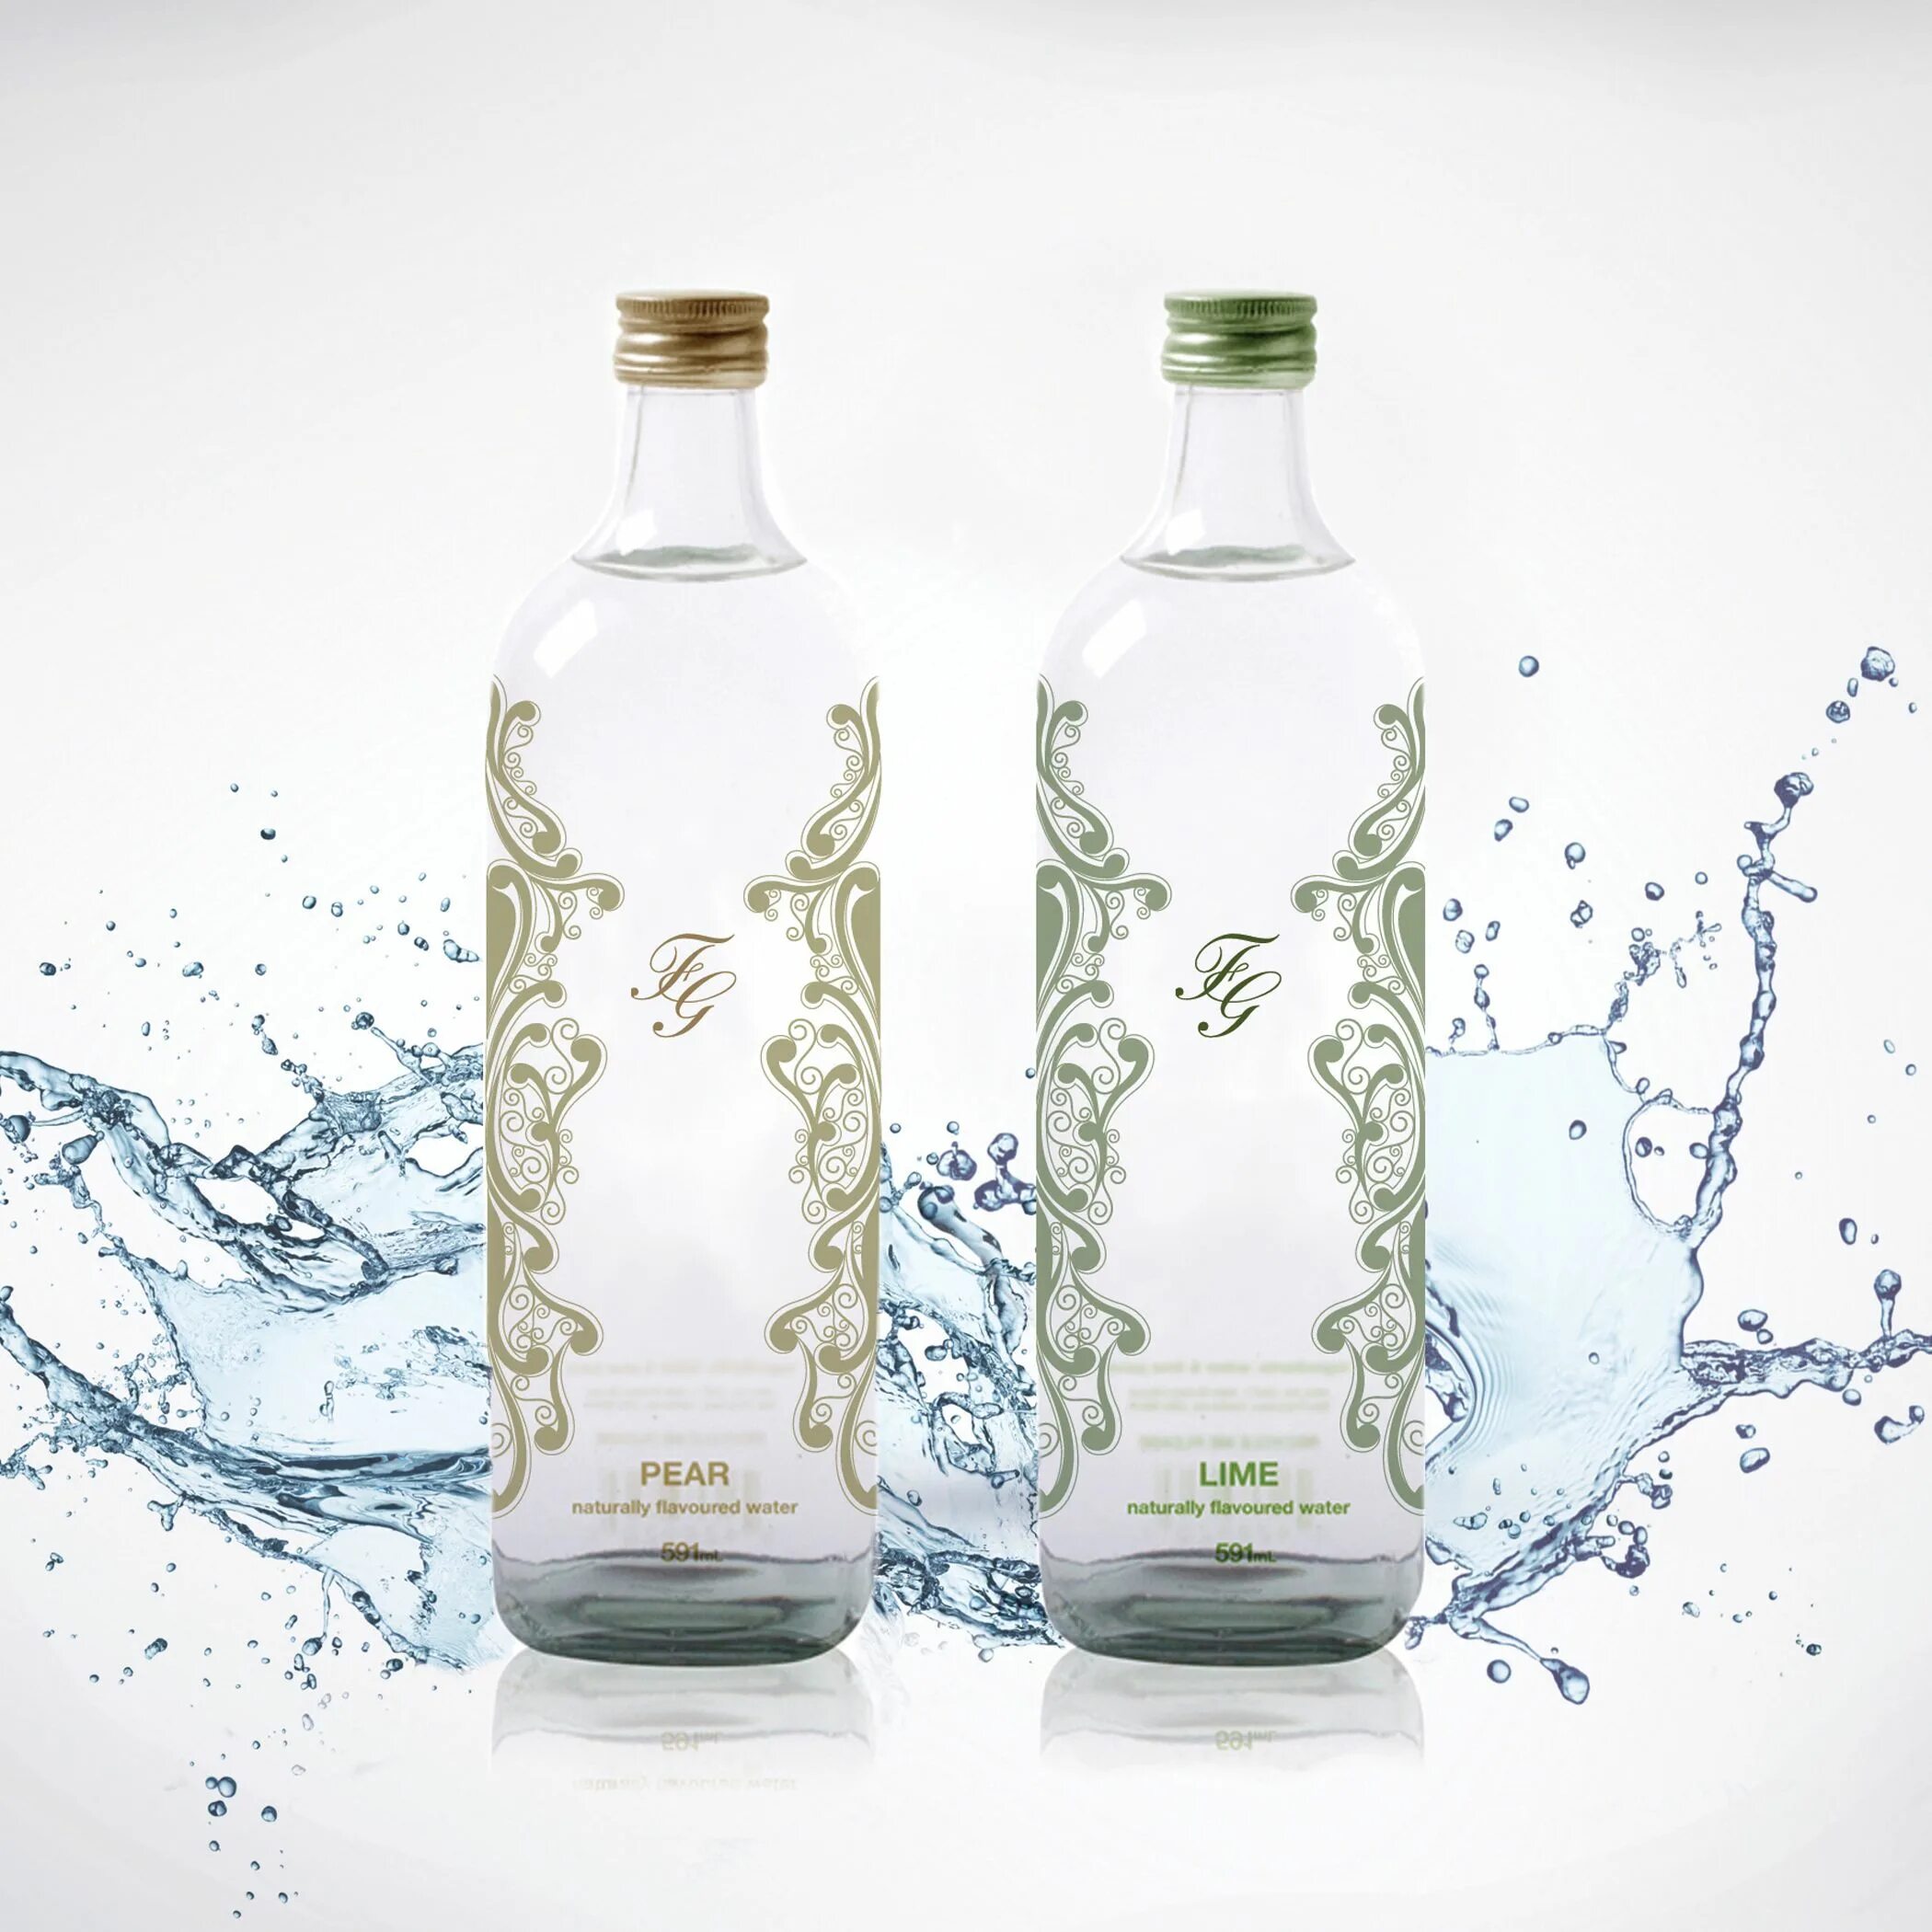 Органическая вода питьевая. Стеклянная бутылка для воды. Вода дизайн. Лучший дизайн воды. Дизайн бутылки.